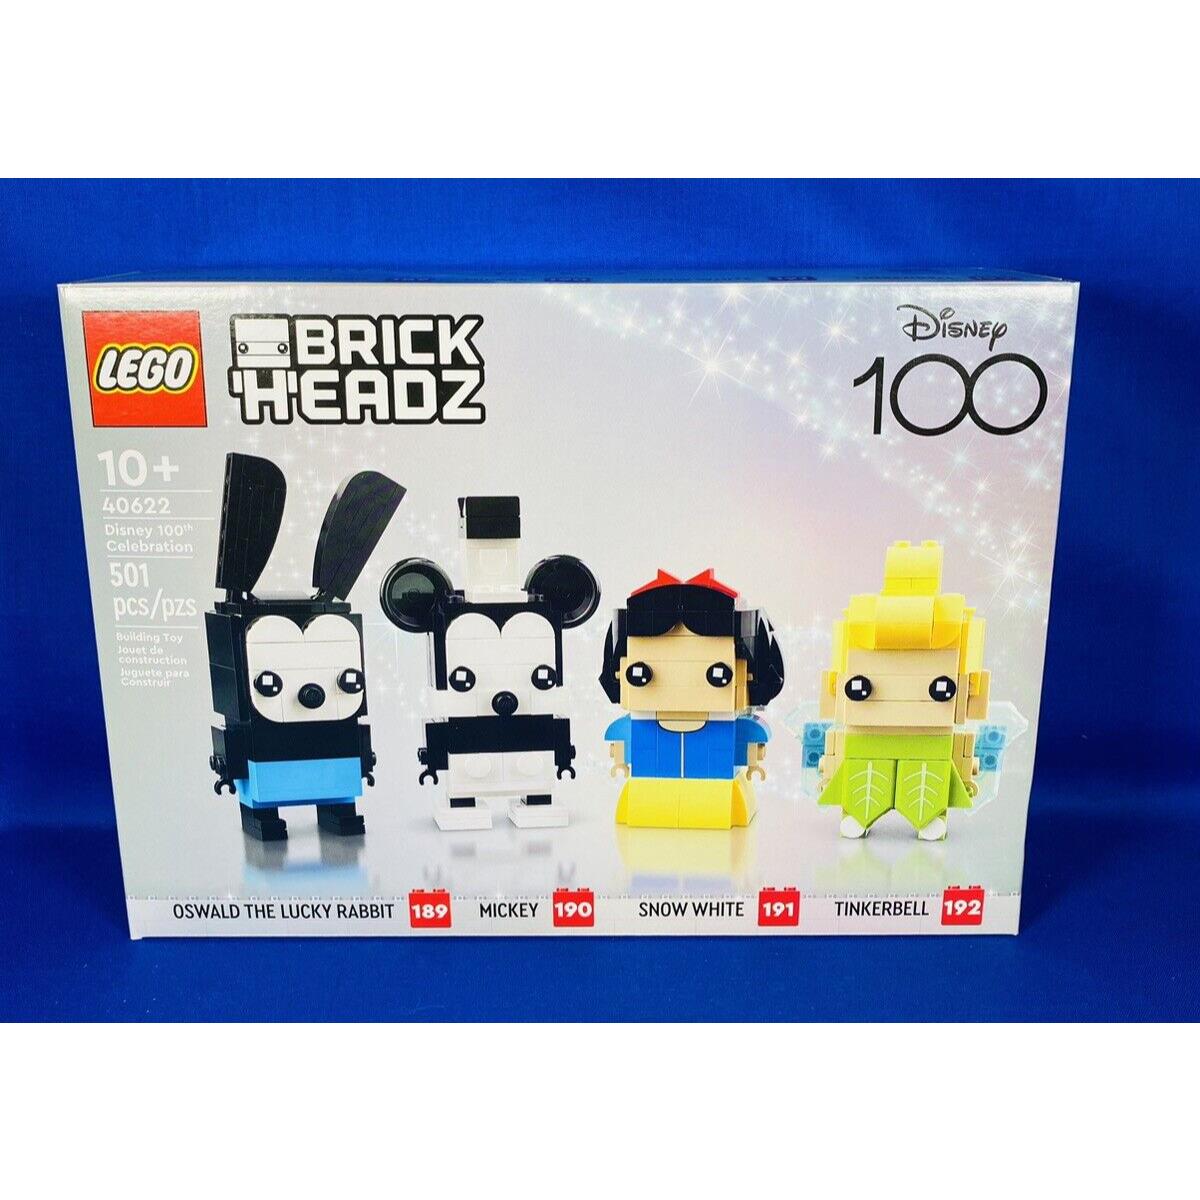 Lego 40622 Disney 100th Celebration Brickheadz